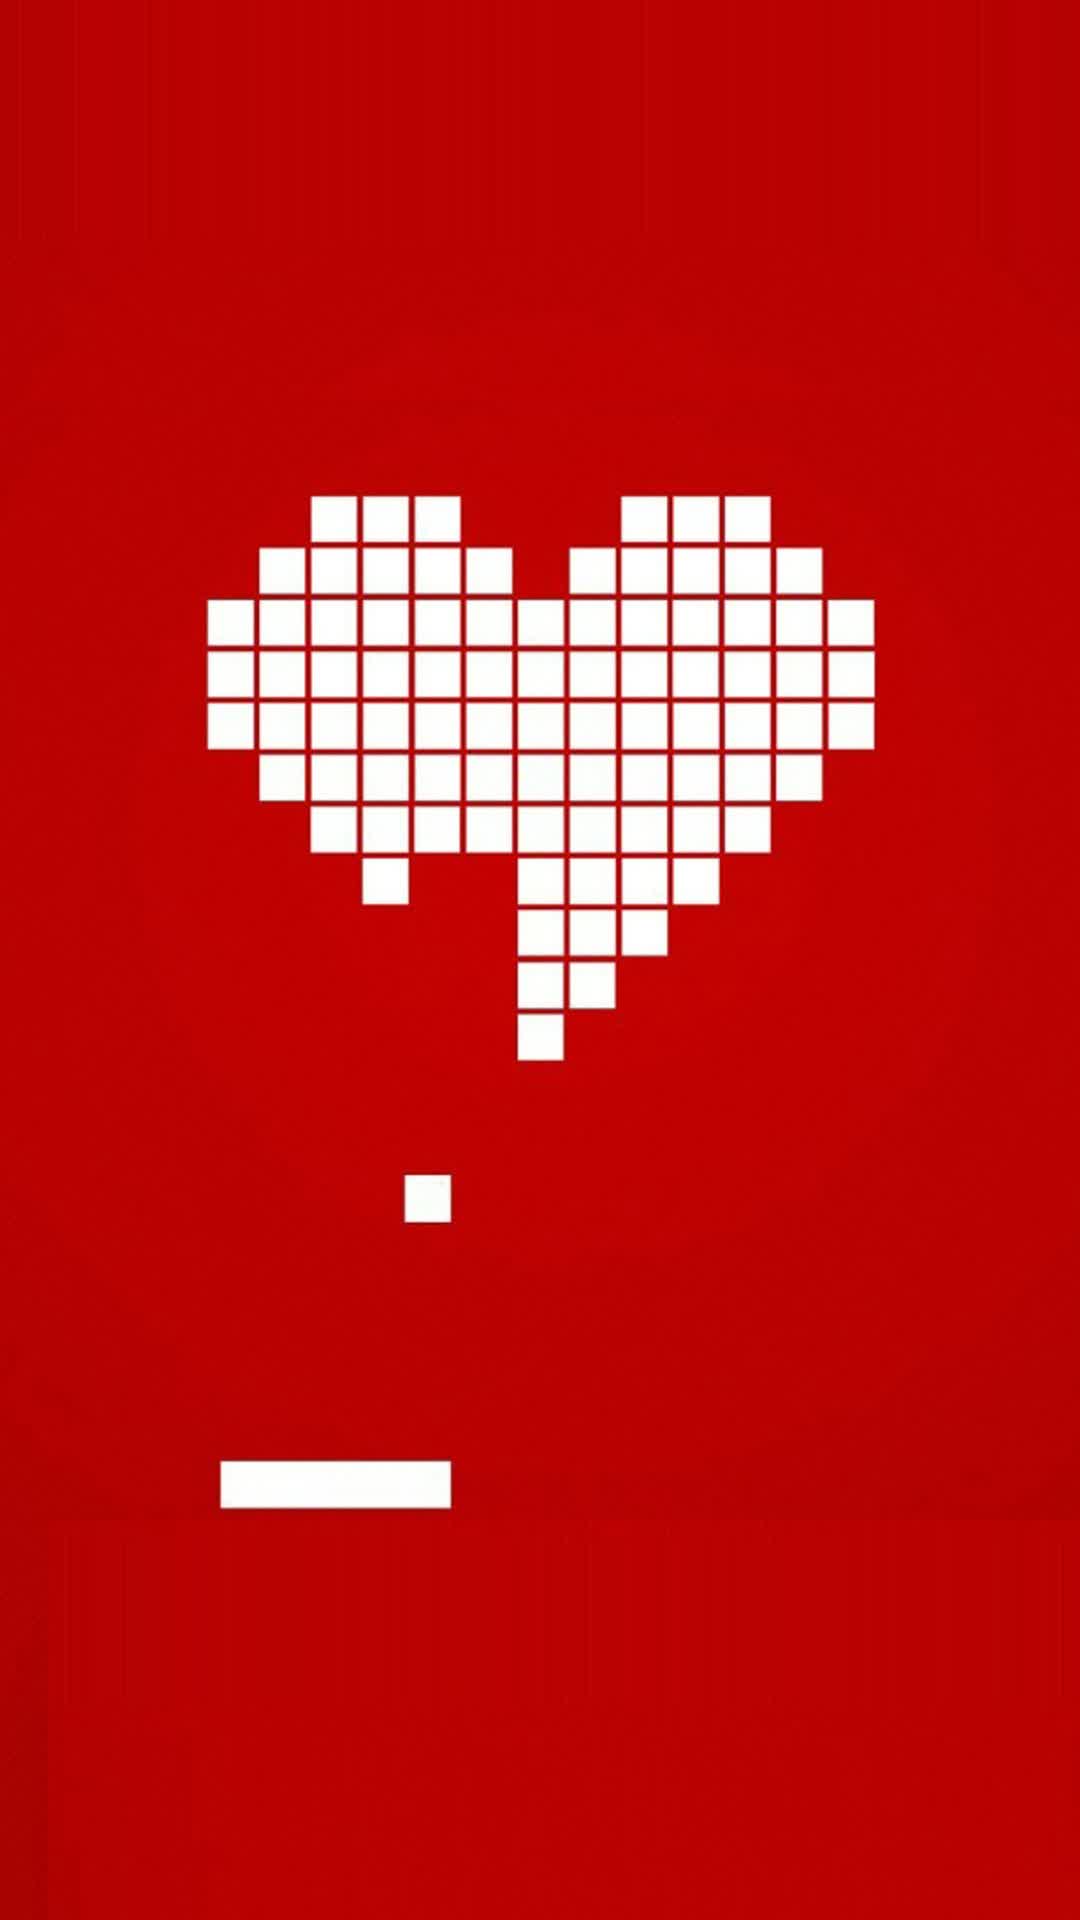 Heart Block Break Iphone Wallpapers